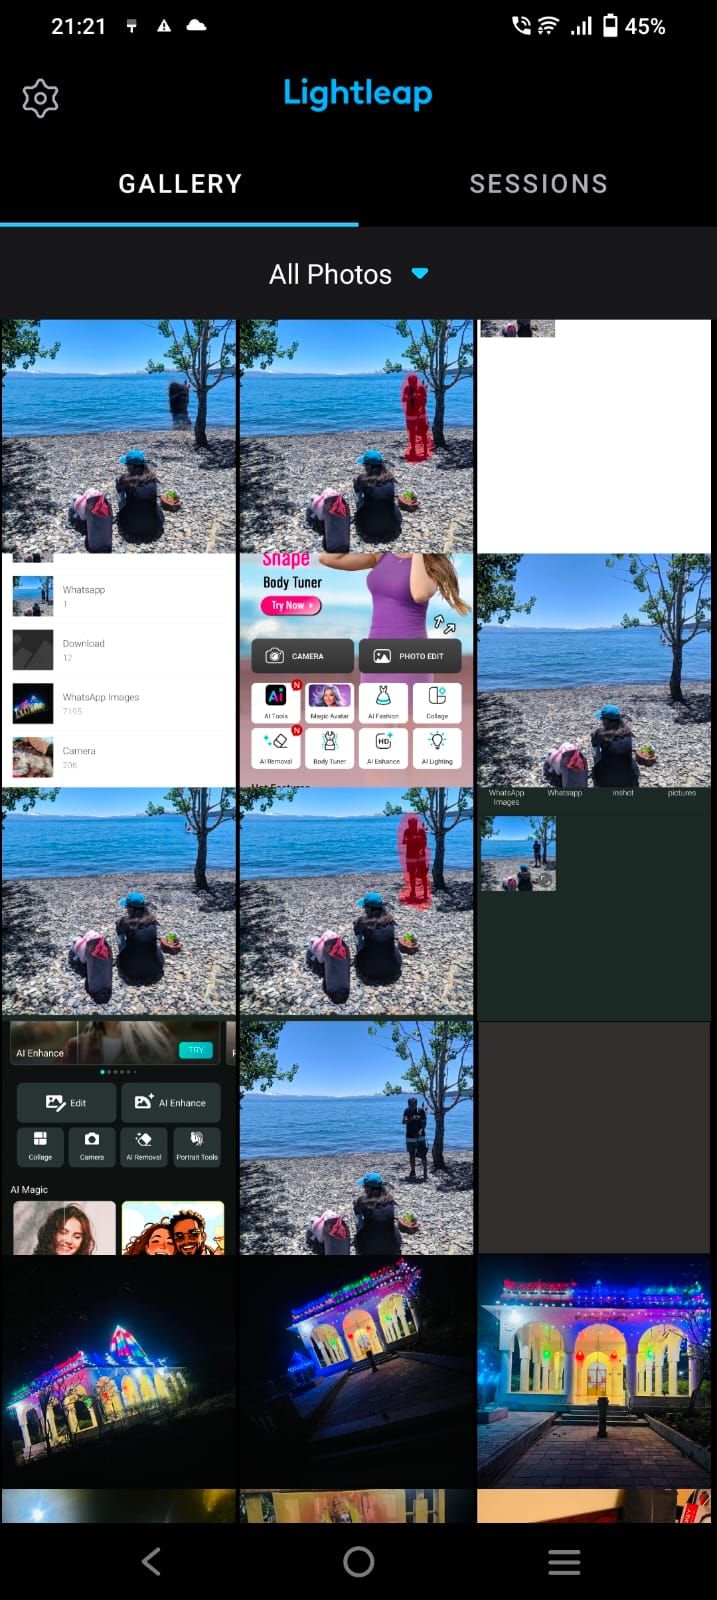 Captura de tela da galeria de imagens no aplicativo Lightleap